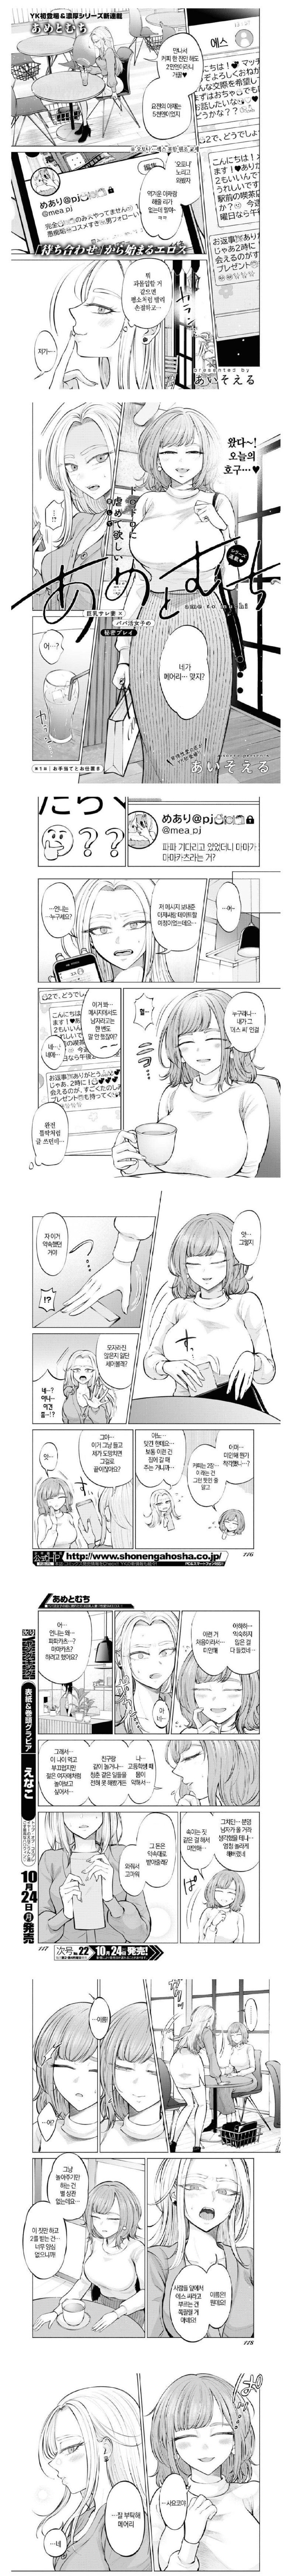 19?) 유부녀와 원조교제 하는만화.manga